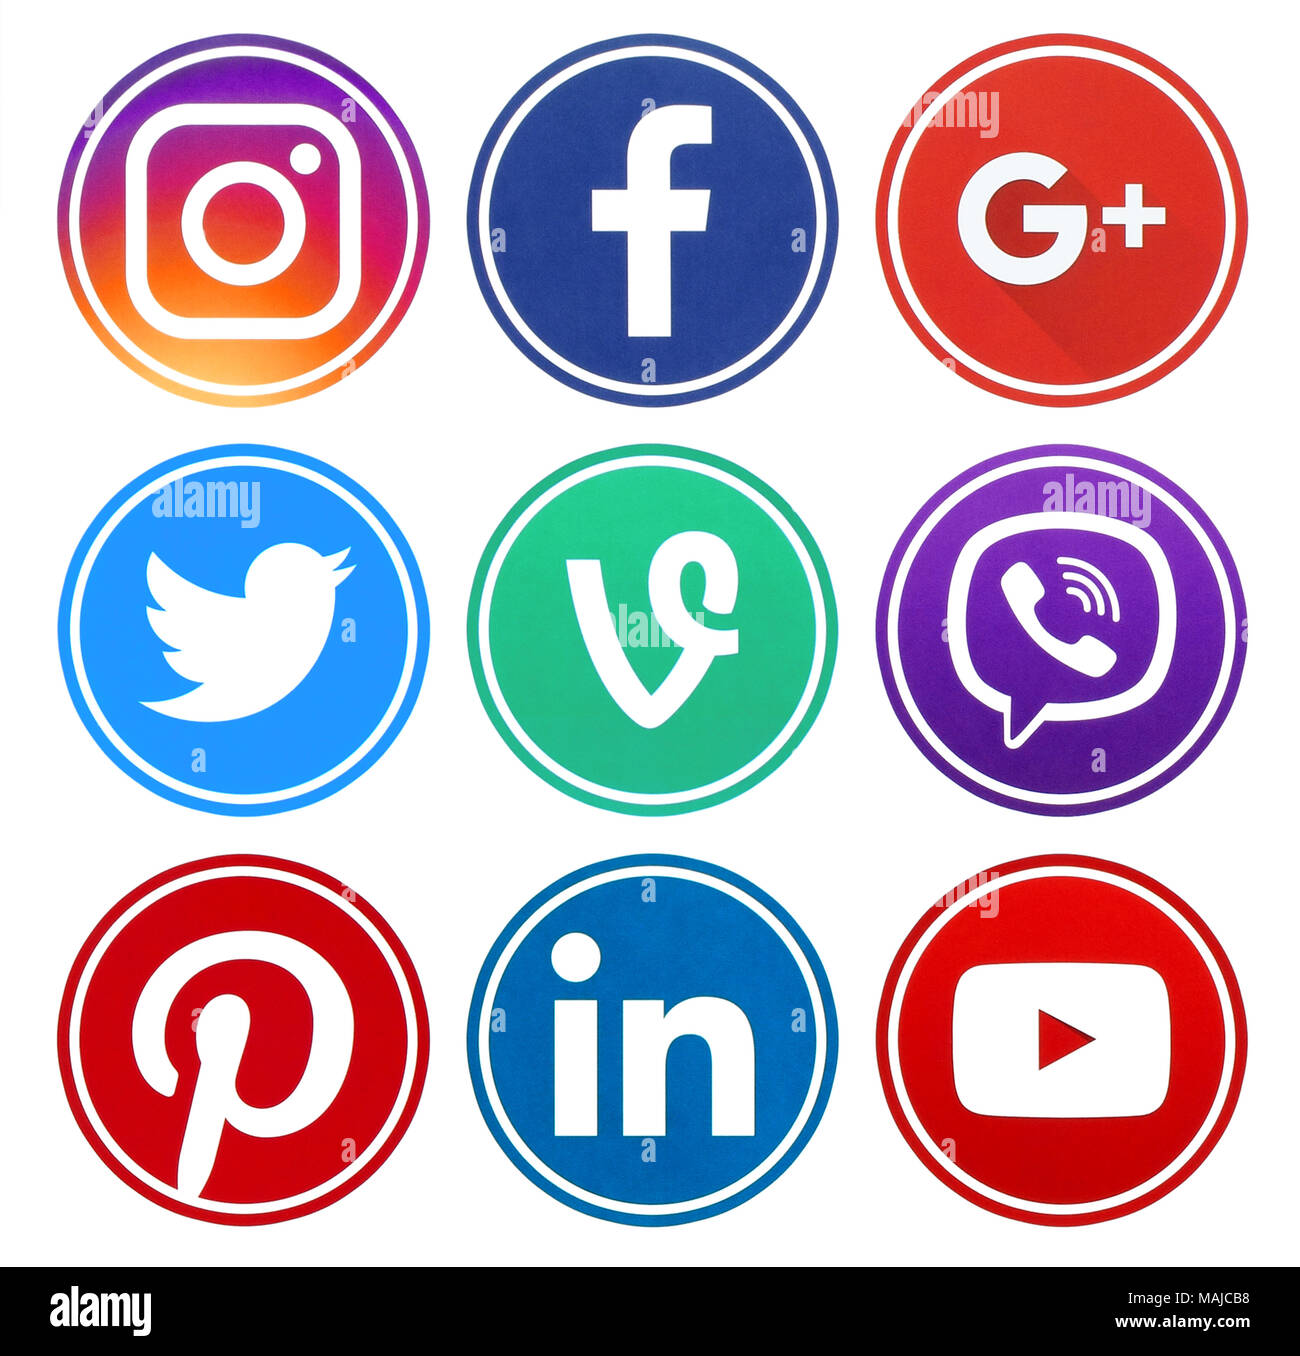 Kiev, Ukraine - le 08 décembre 2017 : cercle populaire social media icons avec rim imprimé sur du papier : Facebook, Twitter, Google Plus, Instagram, LinkedIn, P Banque D'Images